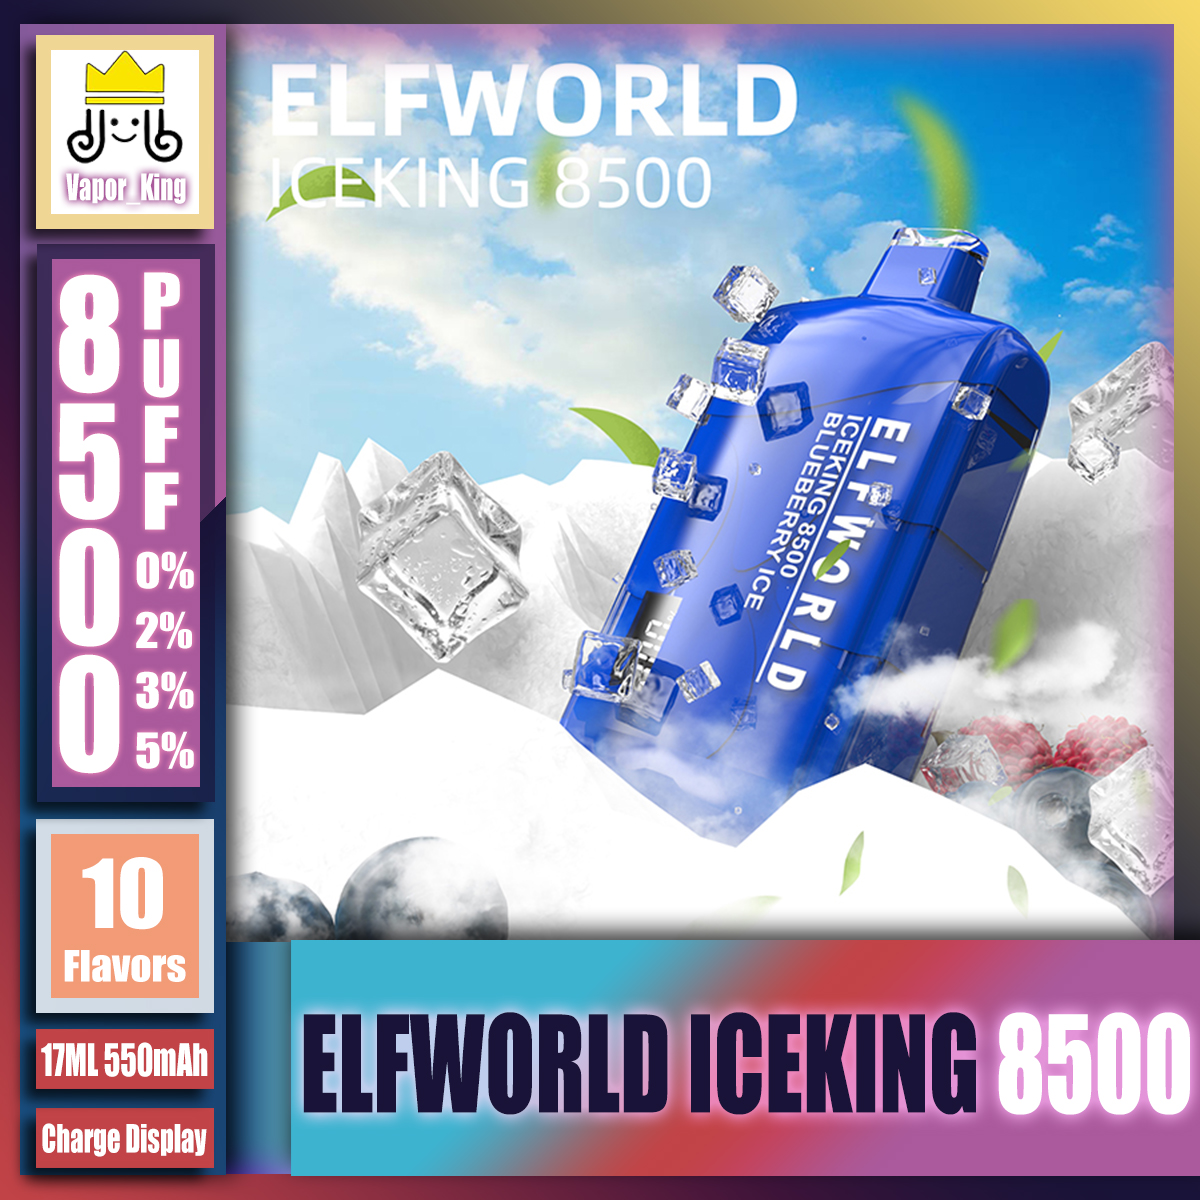 Orijinal Elfworld Iceking 8500 Puf 0/2/3/5% Tek Kullanımlık Şarj Edilebilir Kristal Şarj Ekran E-Cigettes Cihazlar Vape Kalem 550mAh Pil 17ml ayarlanabilir hava akışı